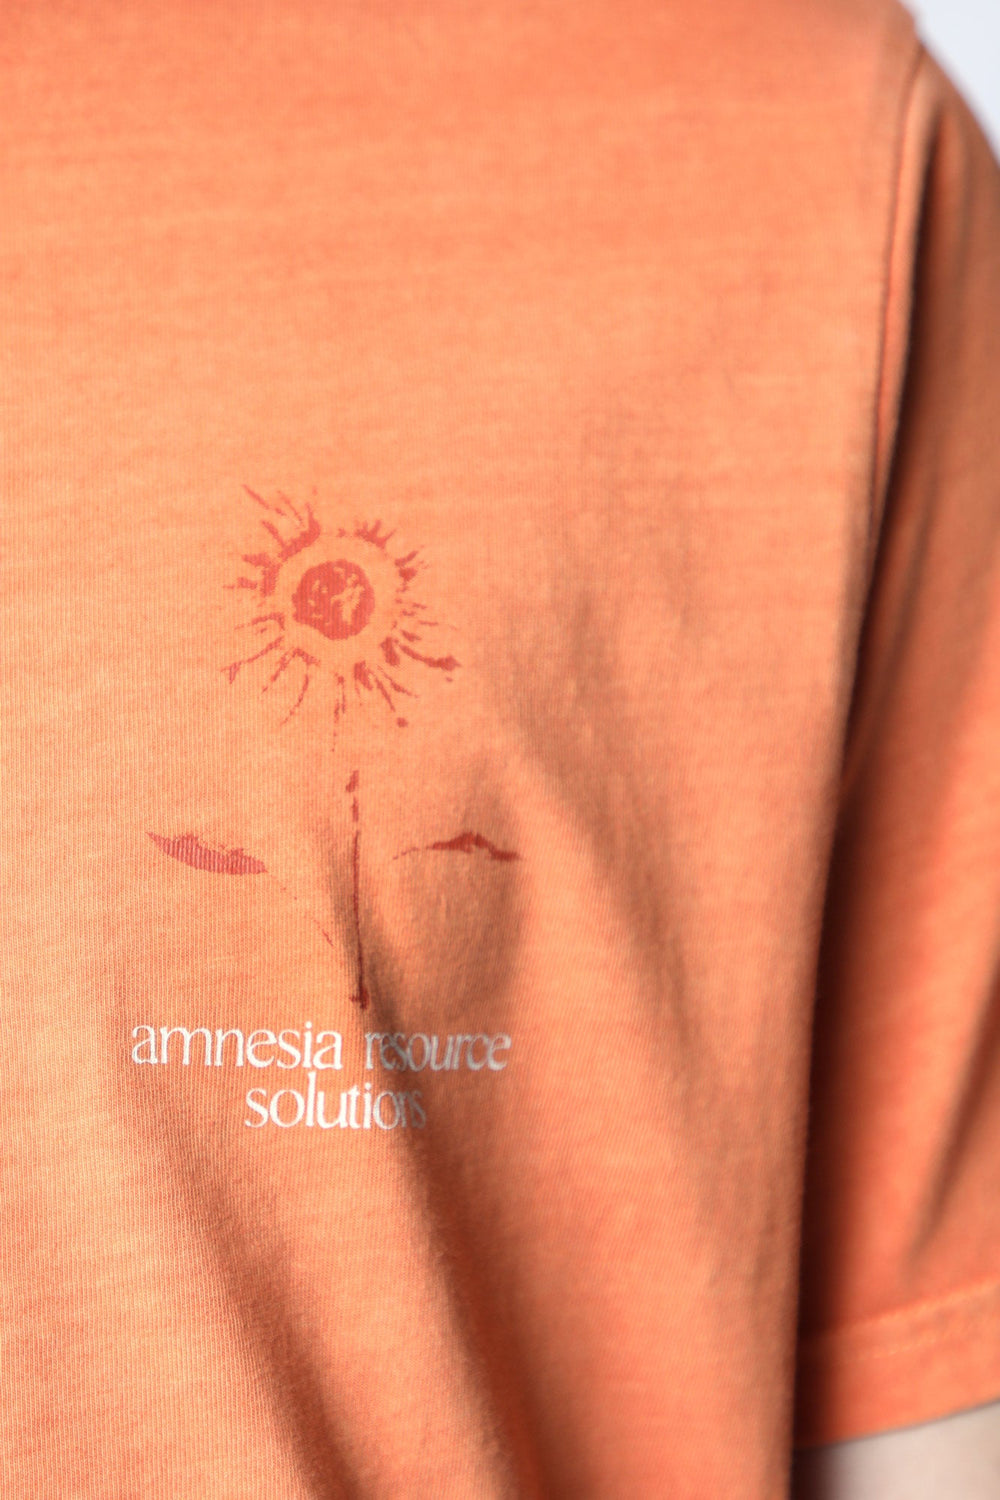 T-Shirt Imprimé Amnesia Homme Orange